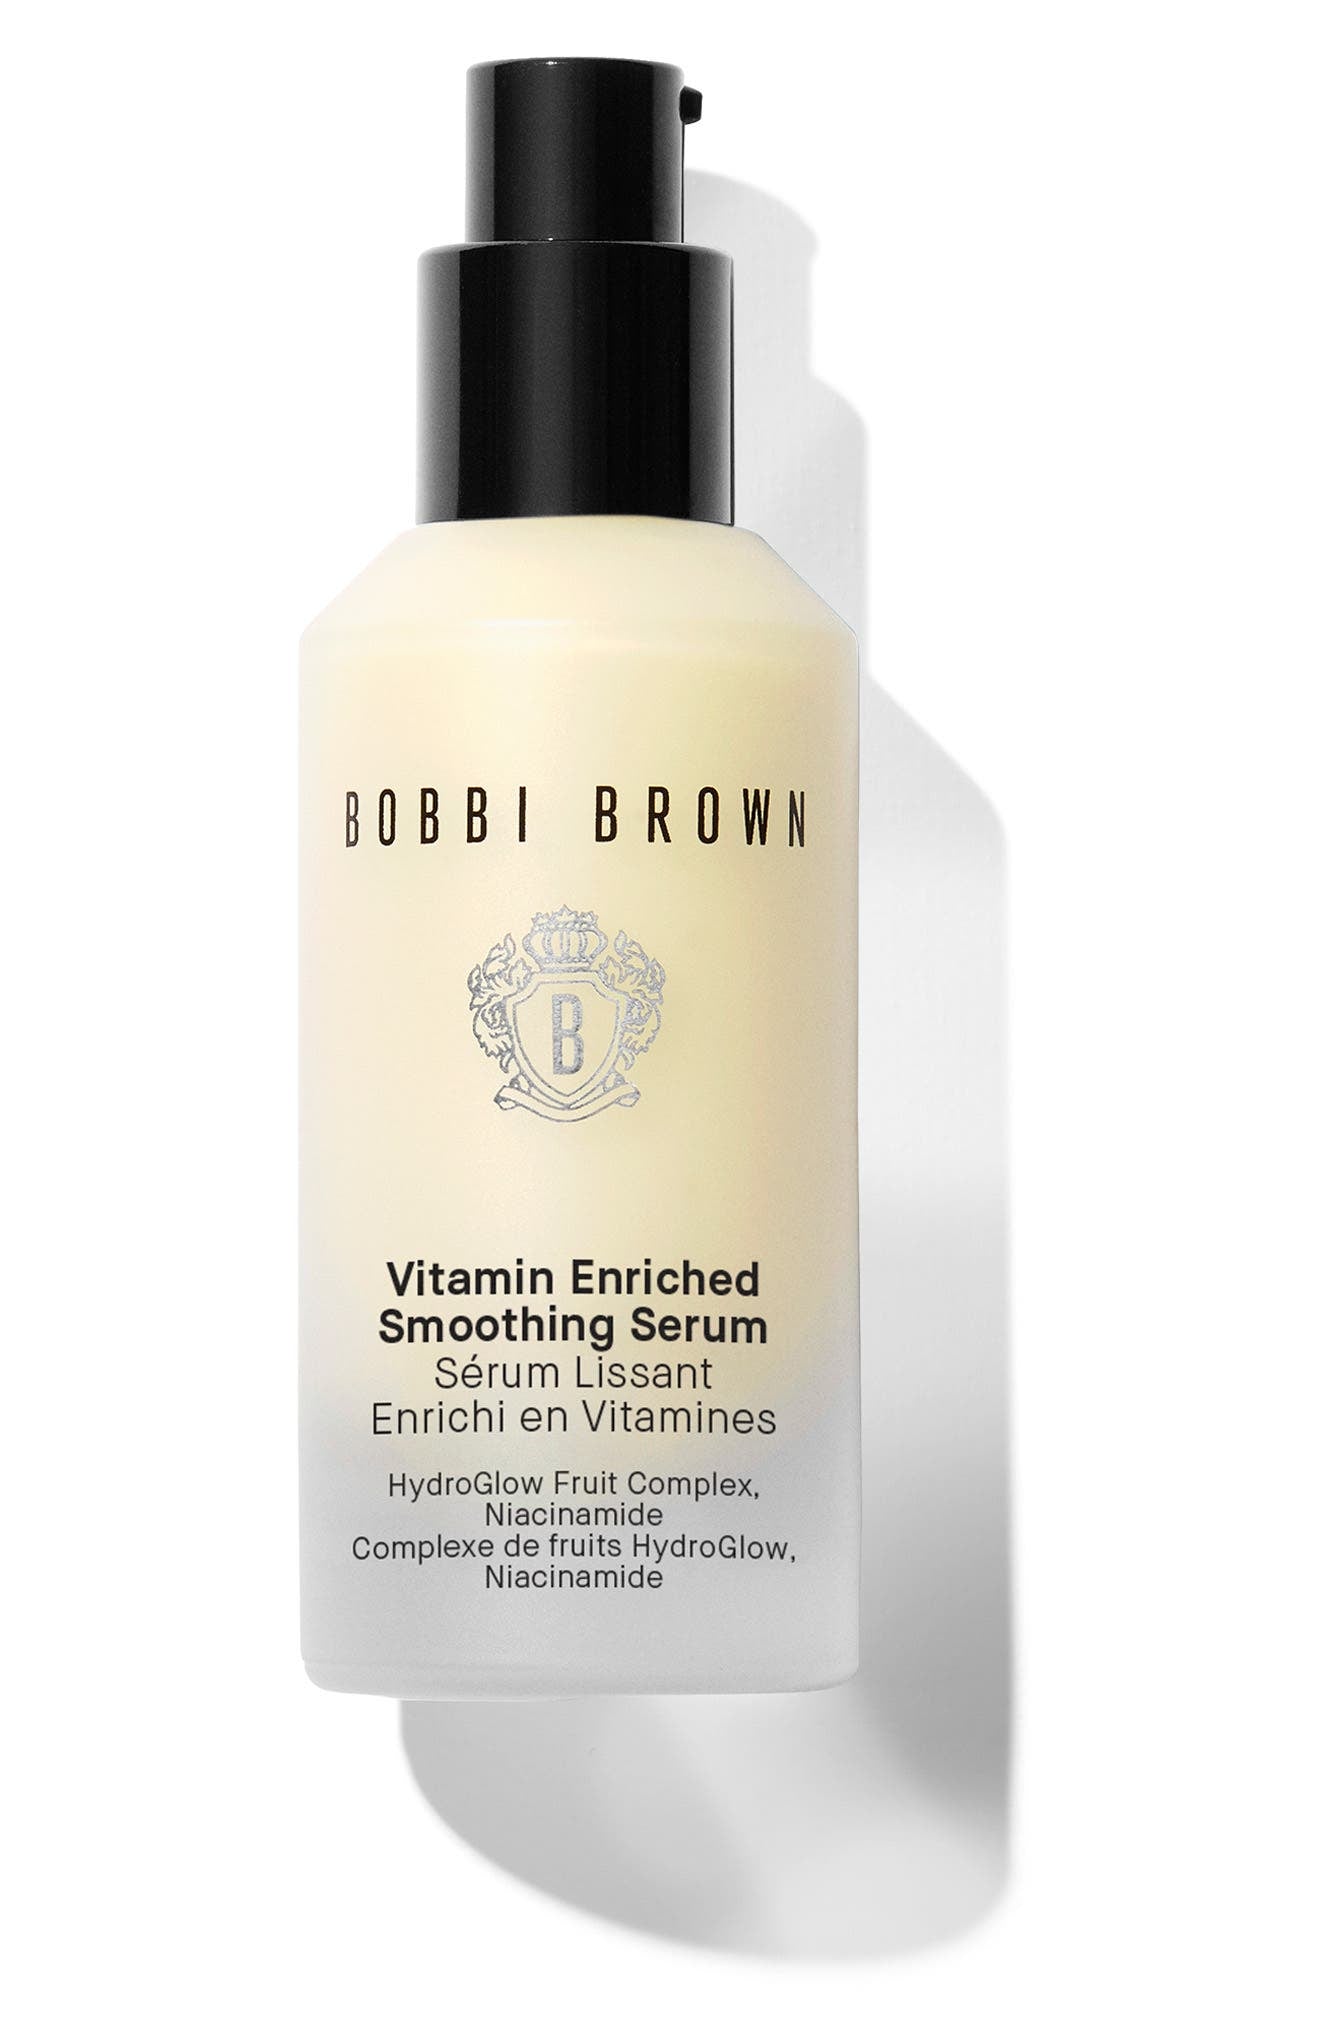 Bobbi Brown Vitamin Enriched Smoothing Serum